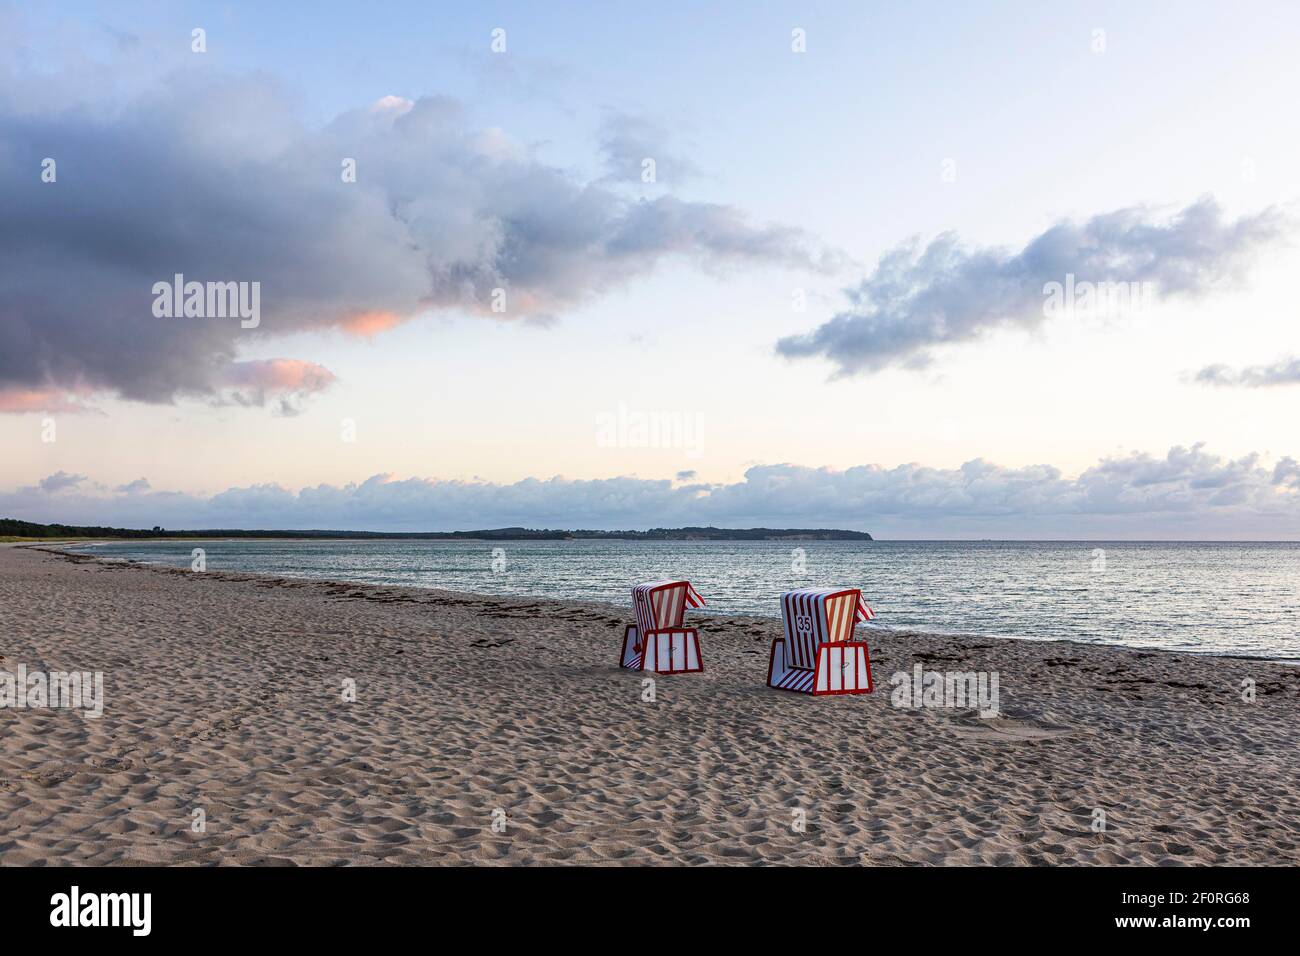 Sole sedie da spiaggia nella luce del mattino alla grande spiaggia di Thiessow, isola Ruegen, Mar Baltico, Meclemburgo-Pomerania occidentale, Germania orientale Foto Stock